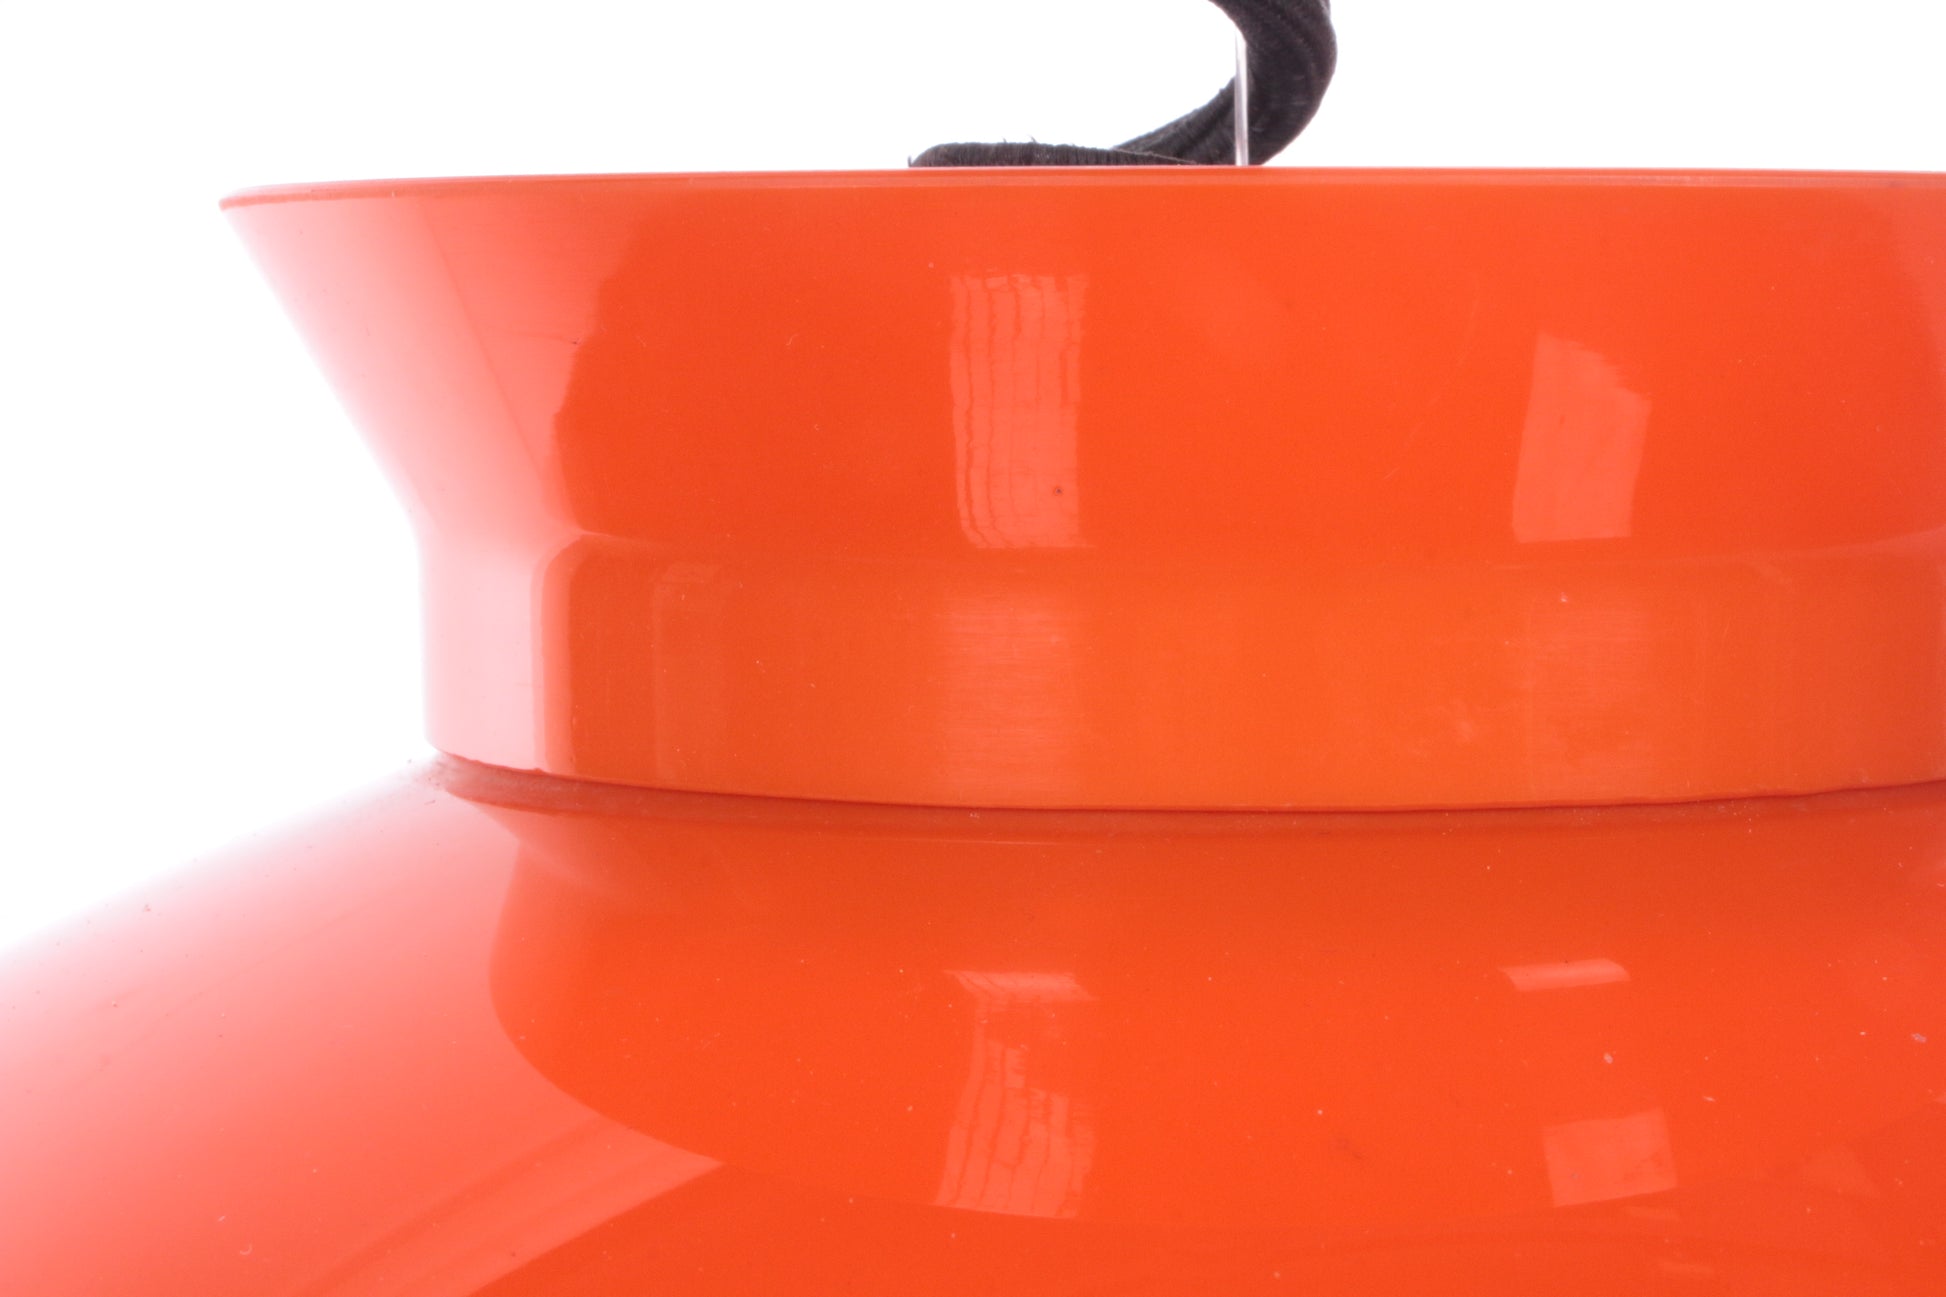 Hanglamp Oranje ontwerp van Achille & Pier Giacomo door Kartell,1959